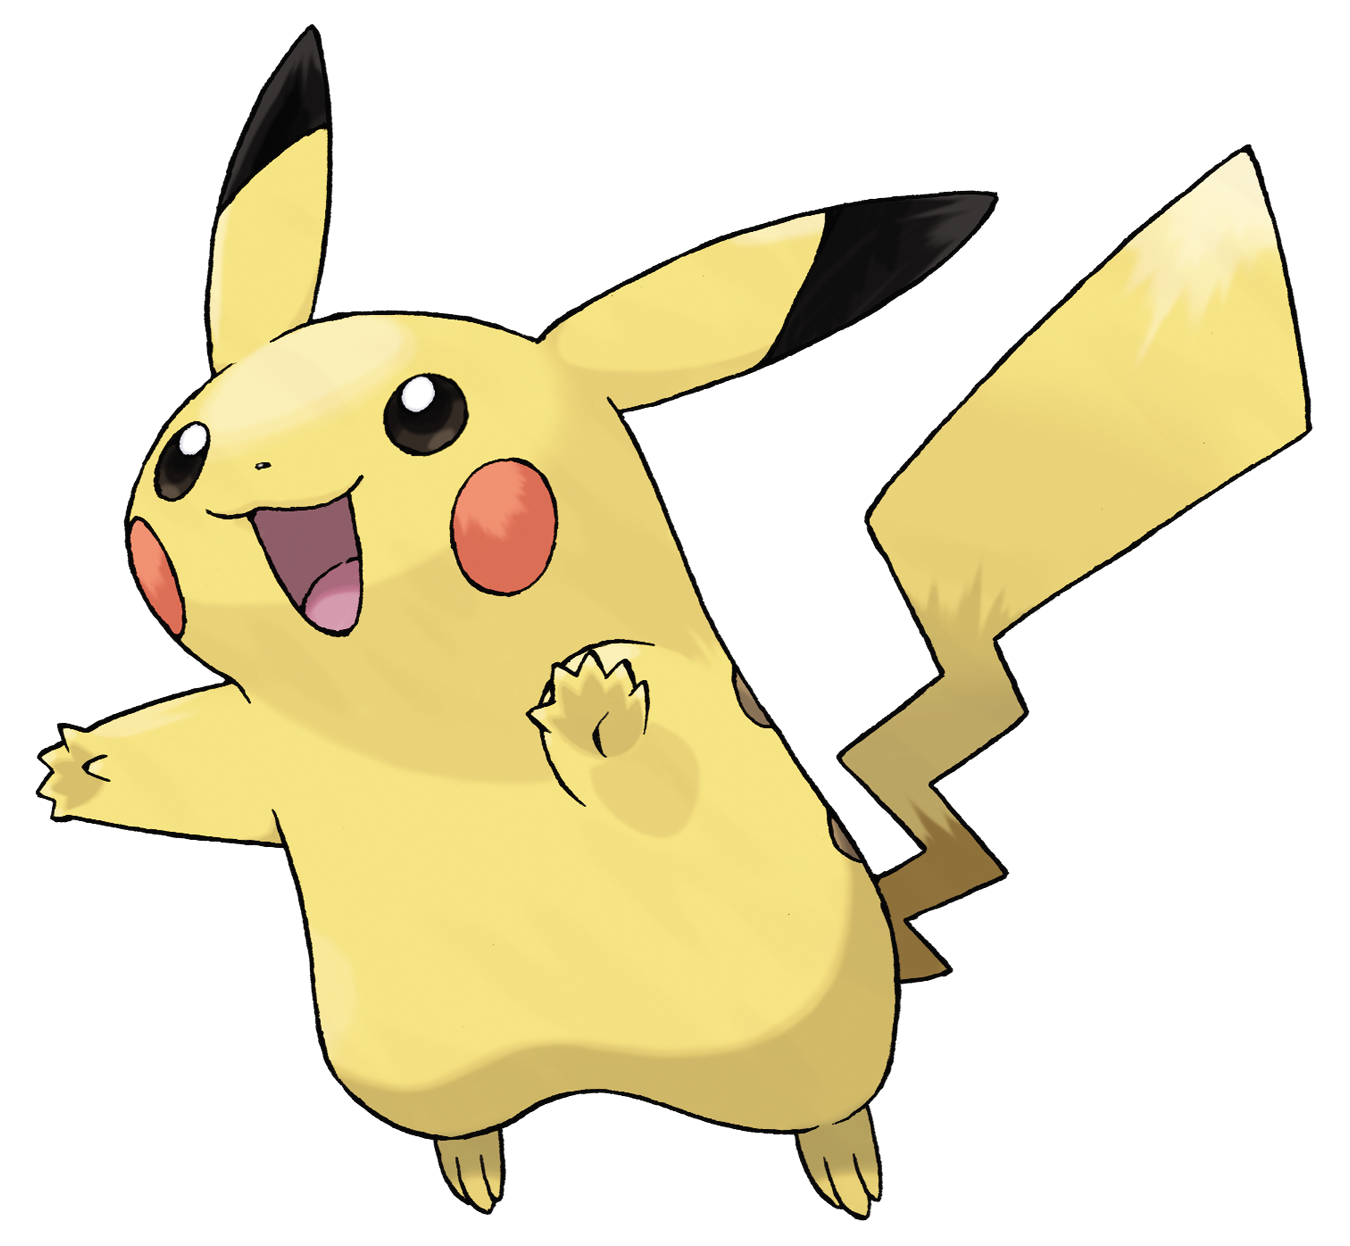 Pikachu | Pokémon Wiki | Fandom